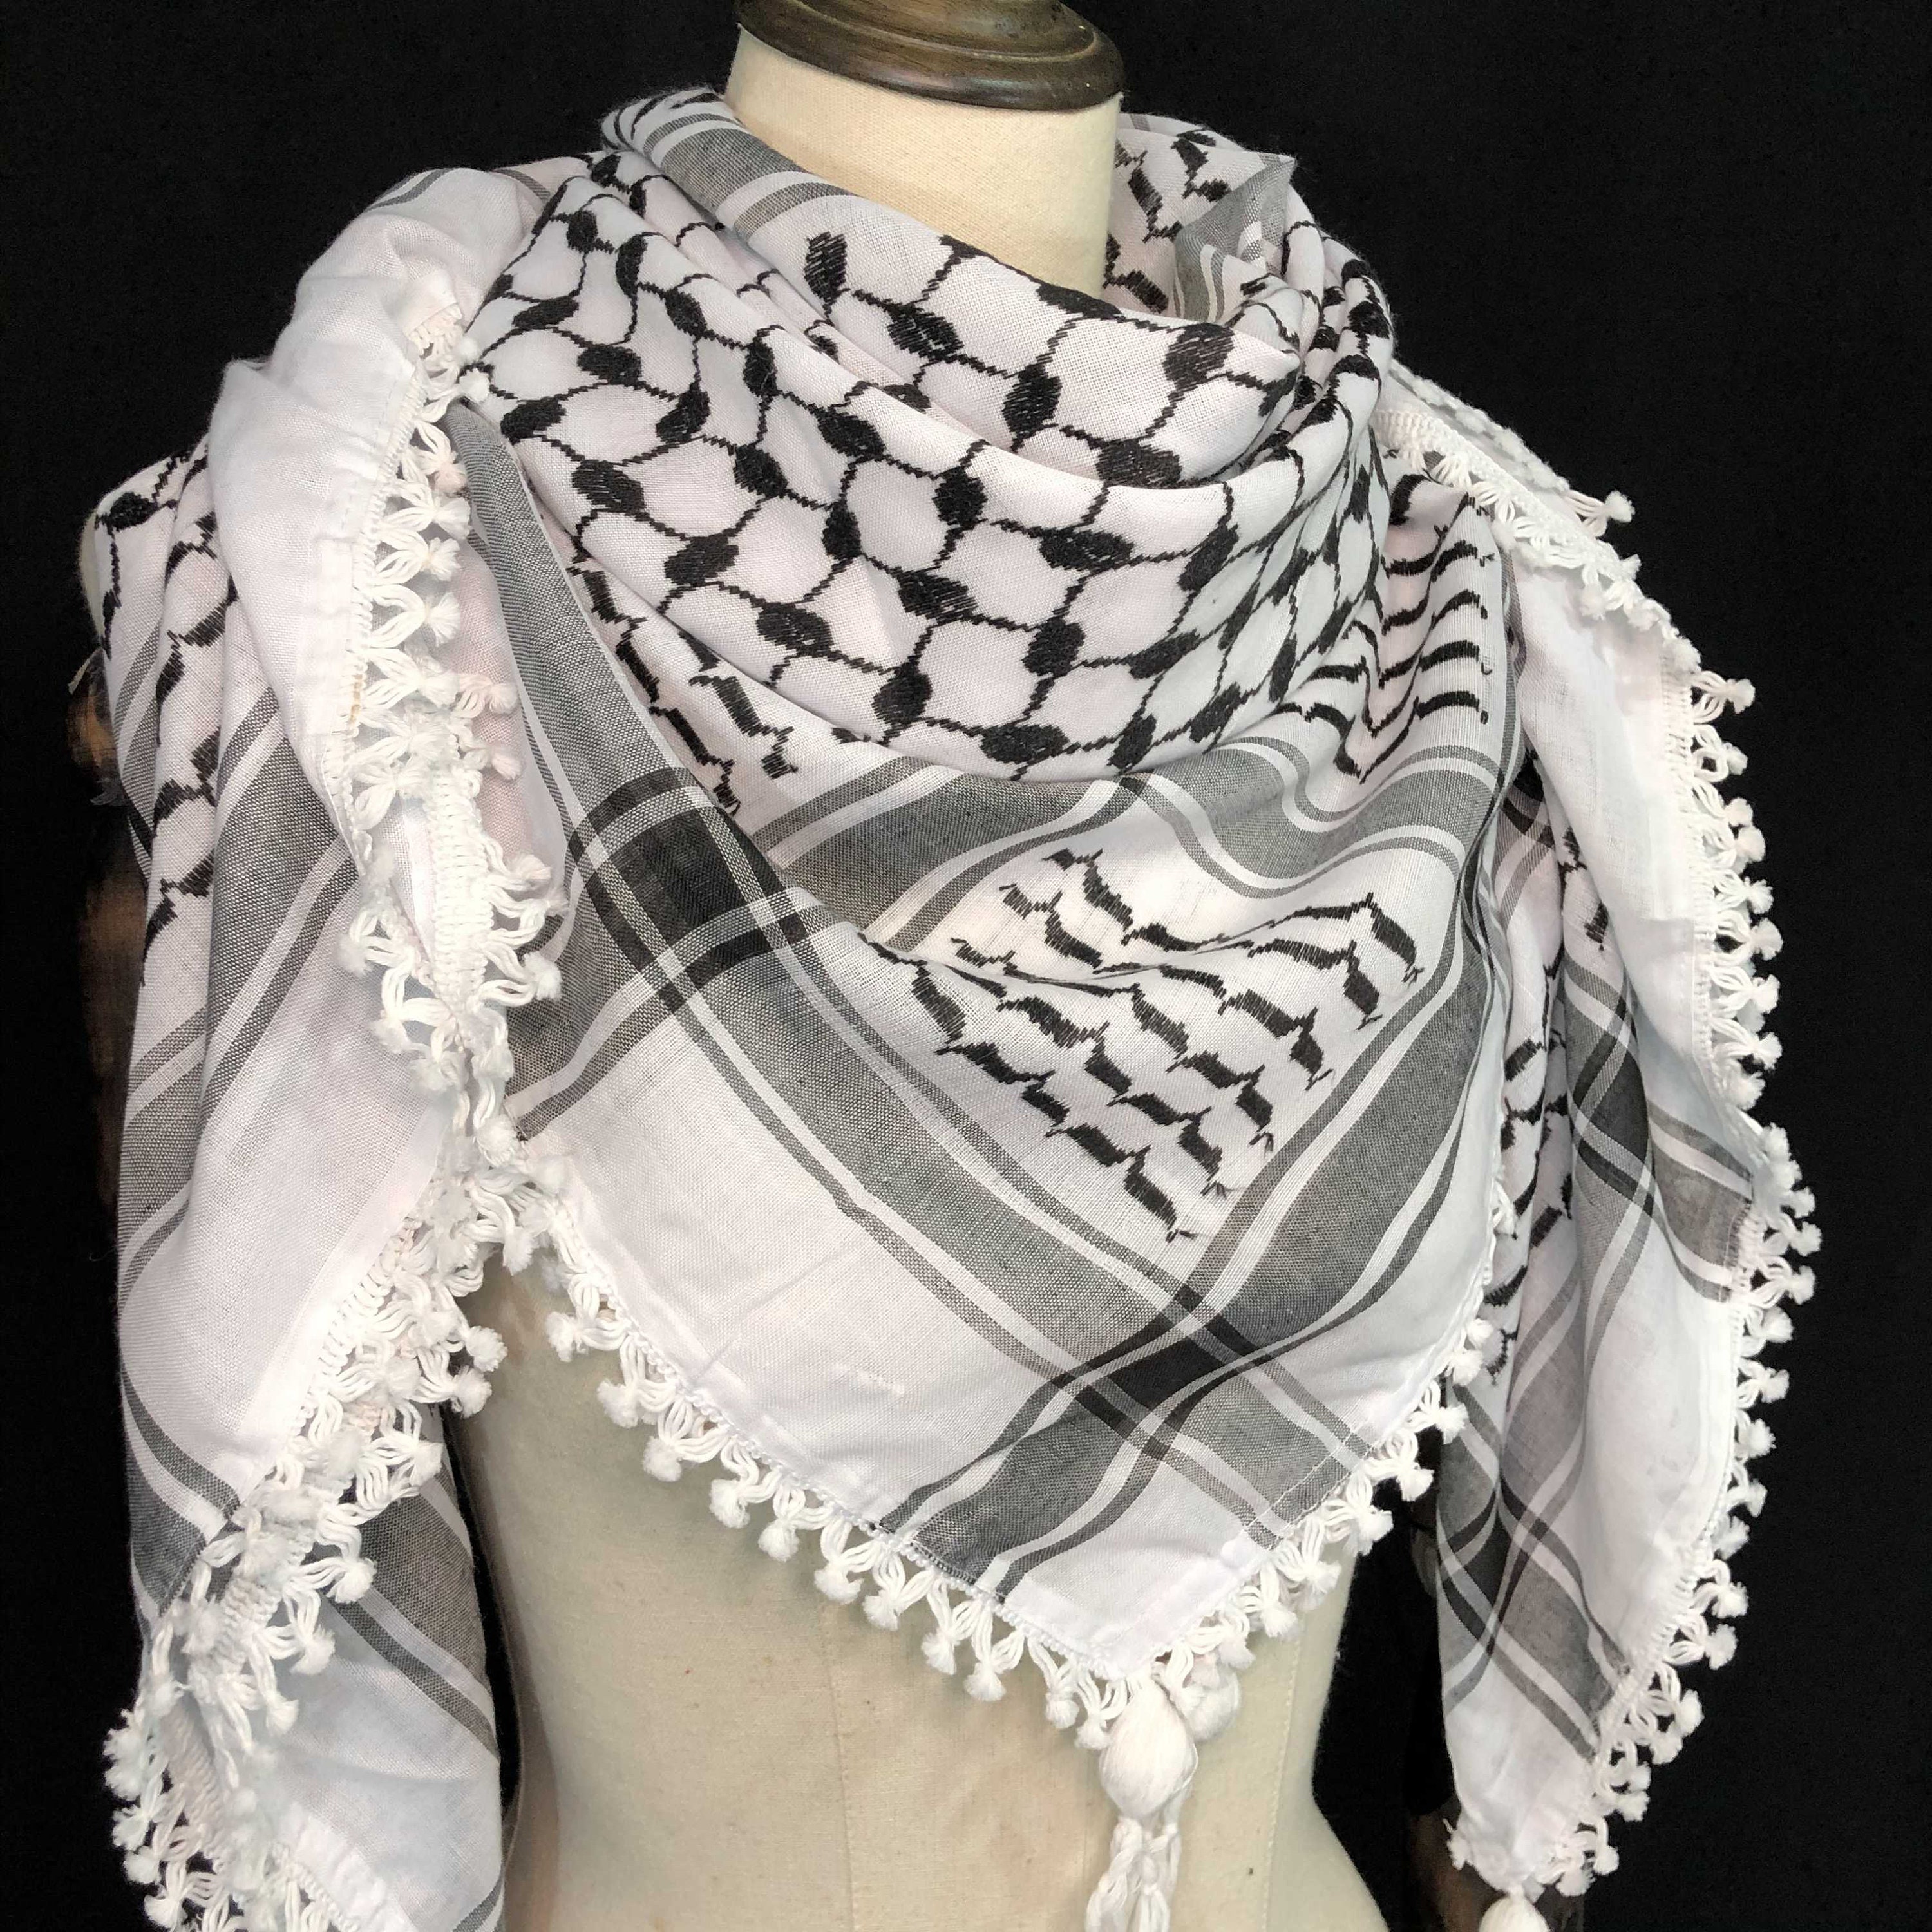 Keffiyeh Palestine Shemagh Scarf Arab Black On White Heavy | Etsy